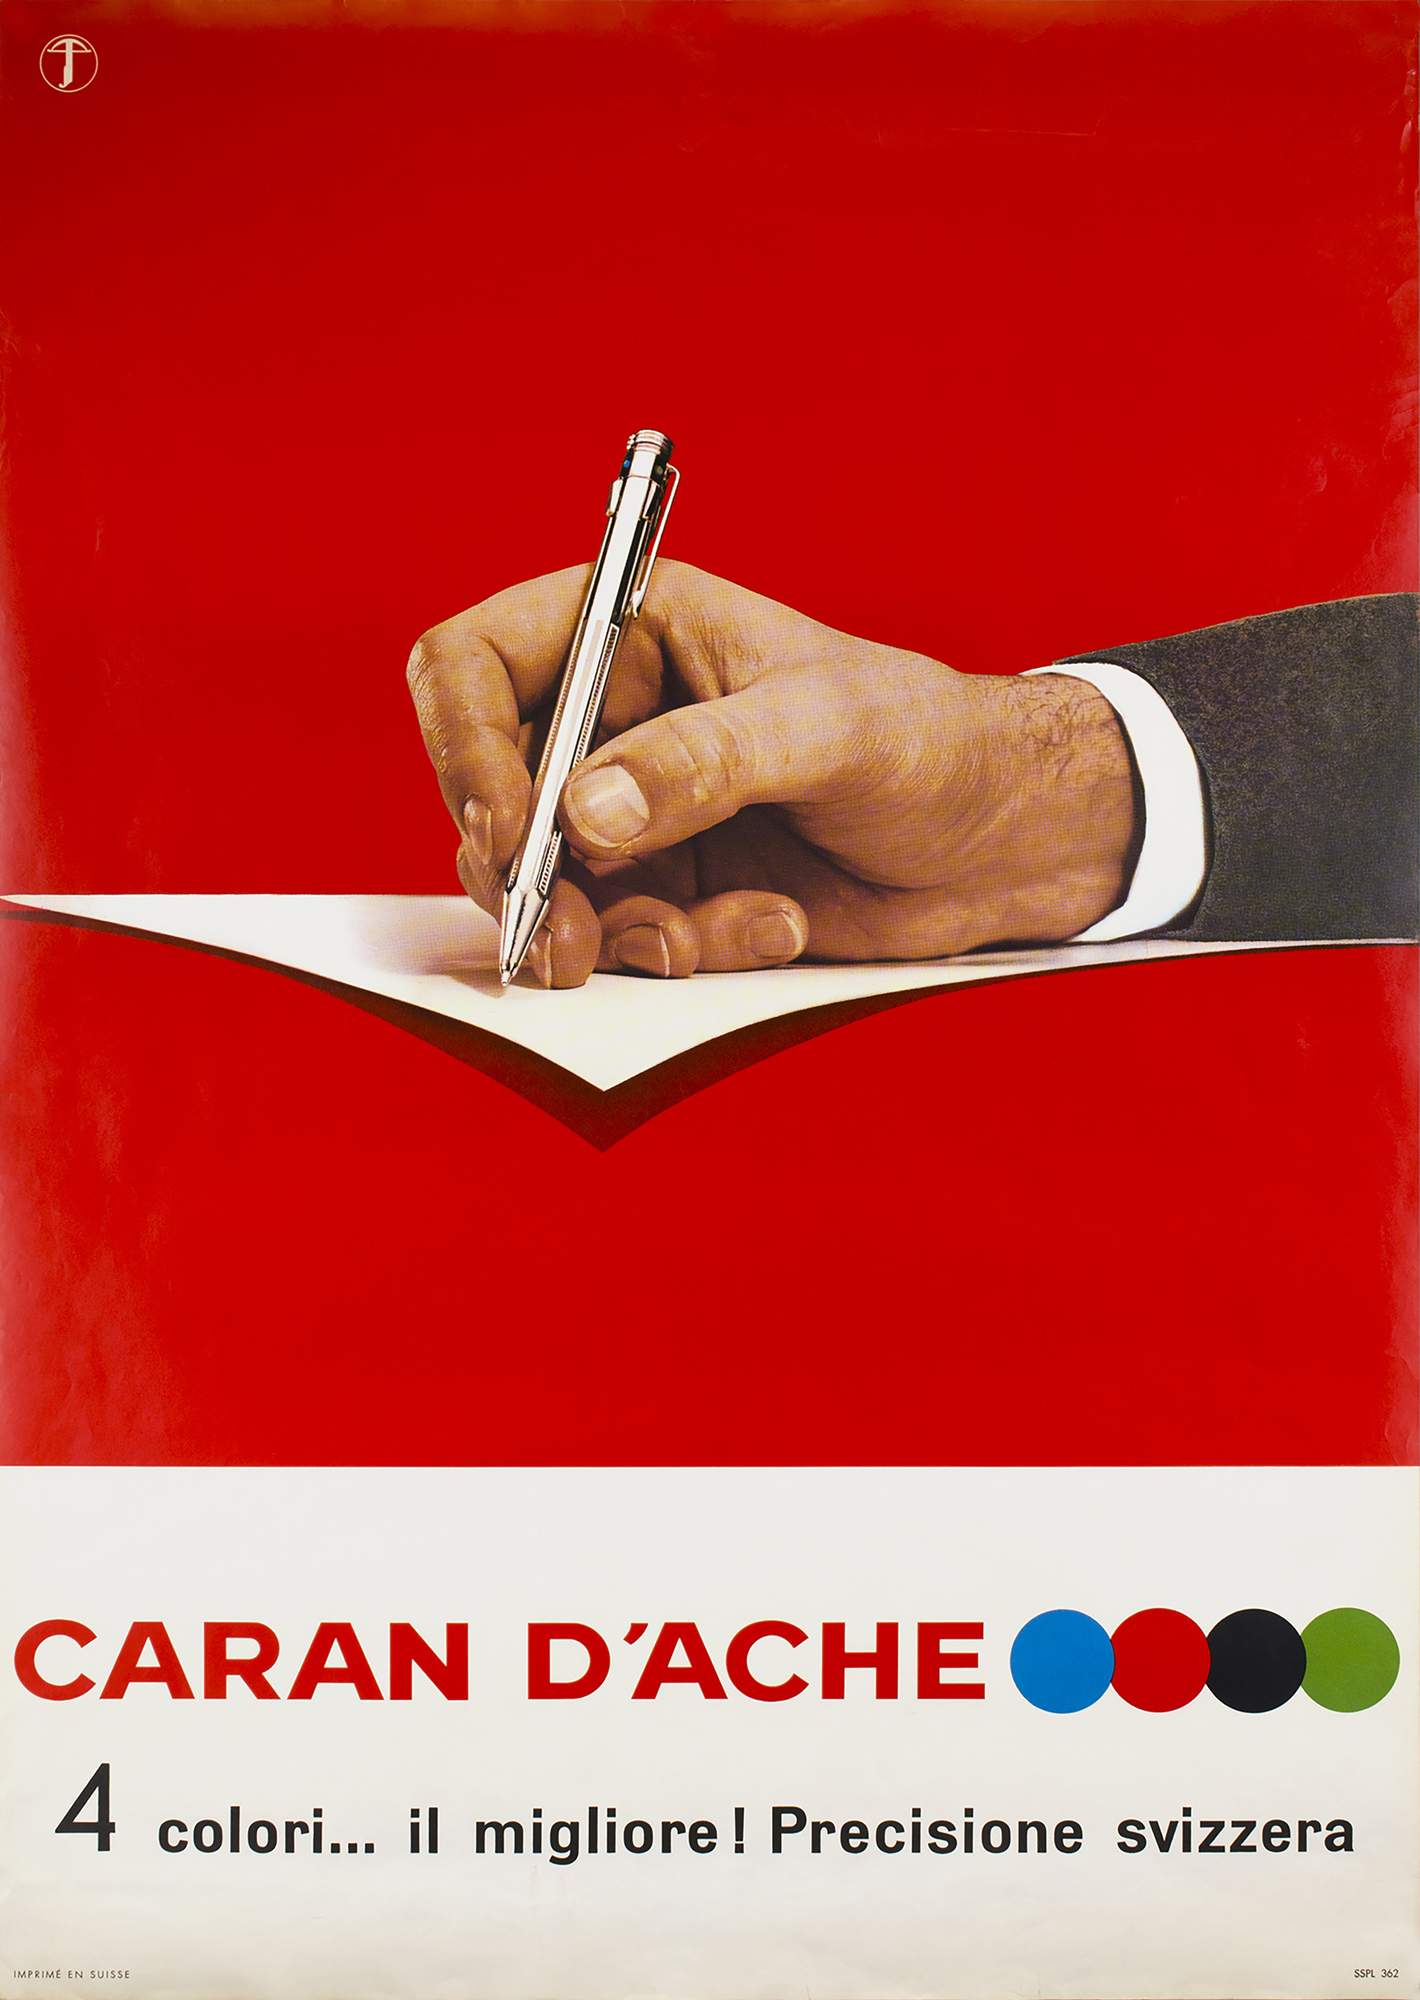 caran-dache-4-colori-il-migliore-precisione-svizzera-36903-caran-dache-vintage-poster.jpg